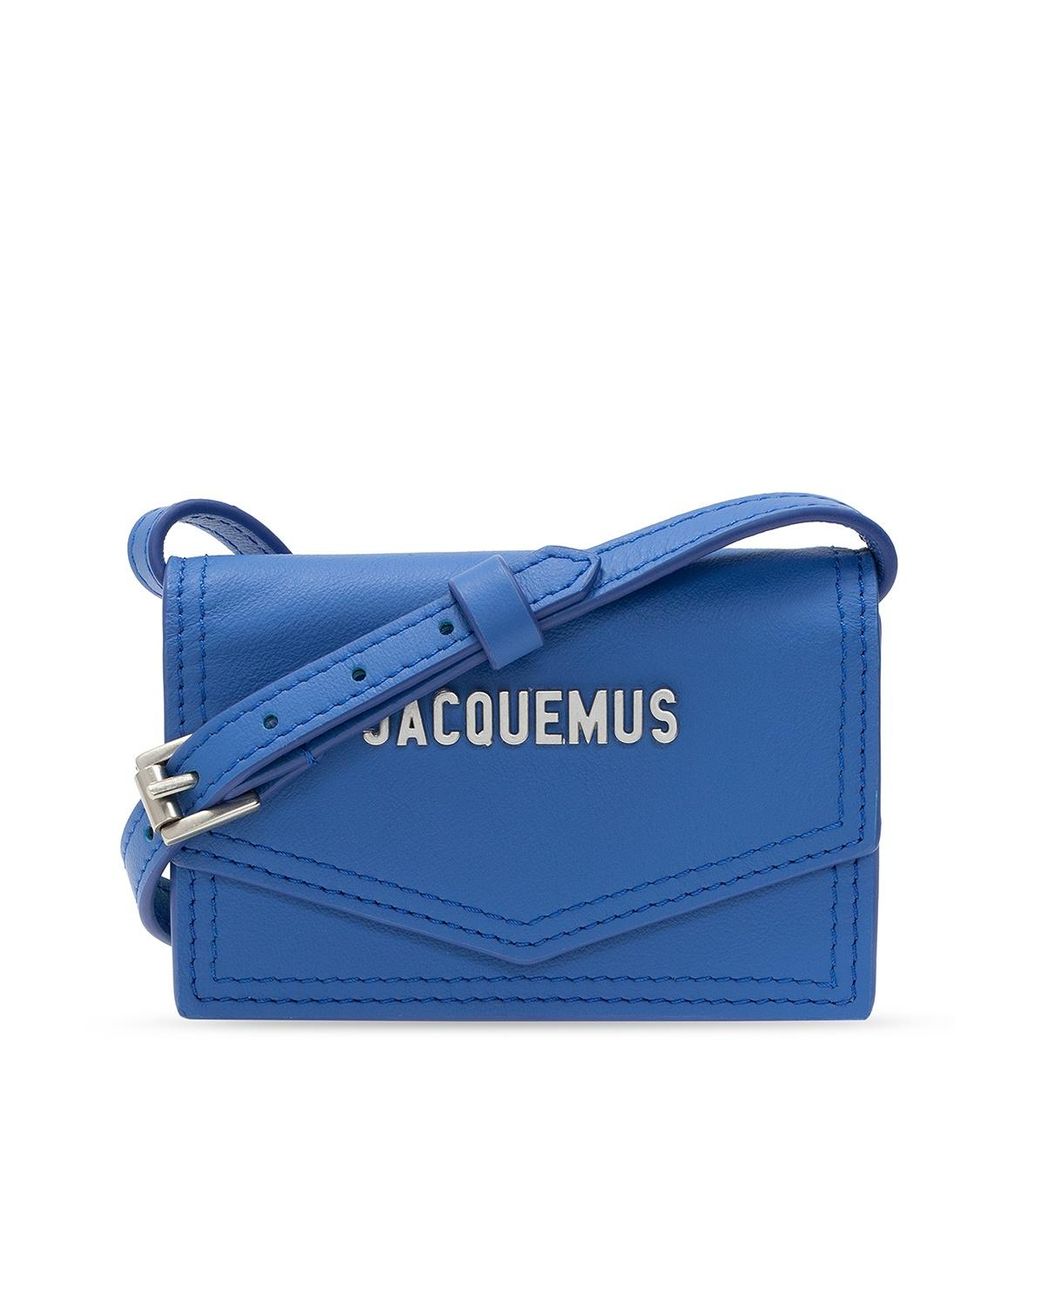 Jacquemus Leather 'le Porte Azur' Shoulder Bag Blue for Men - Lyst